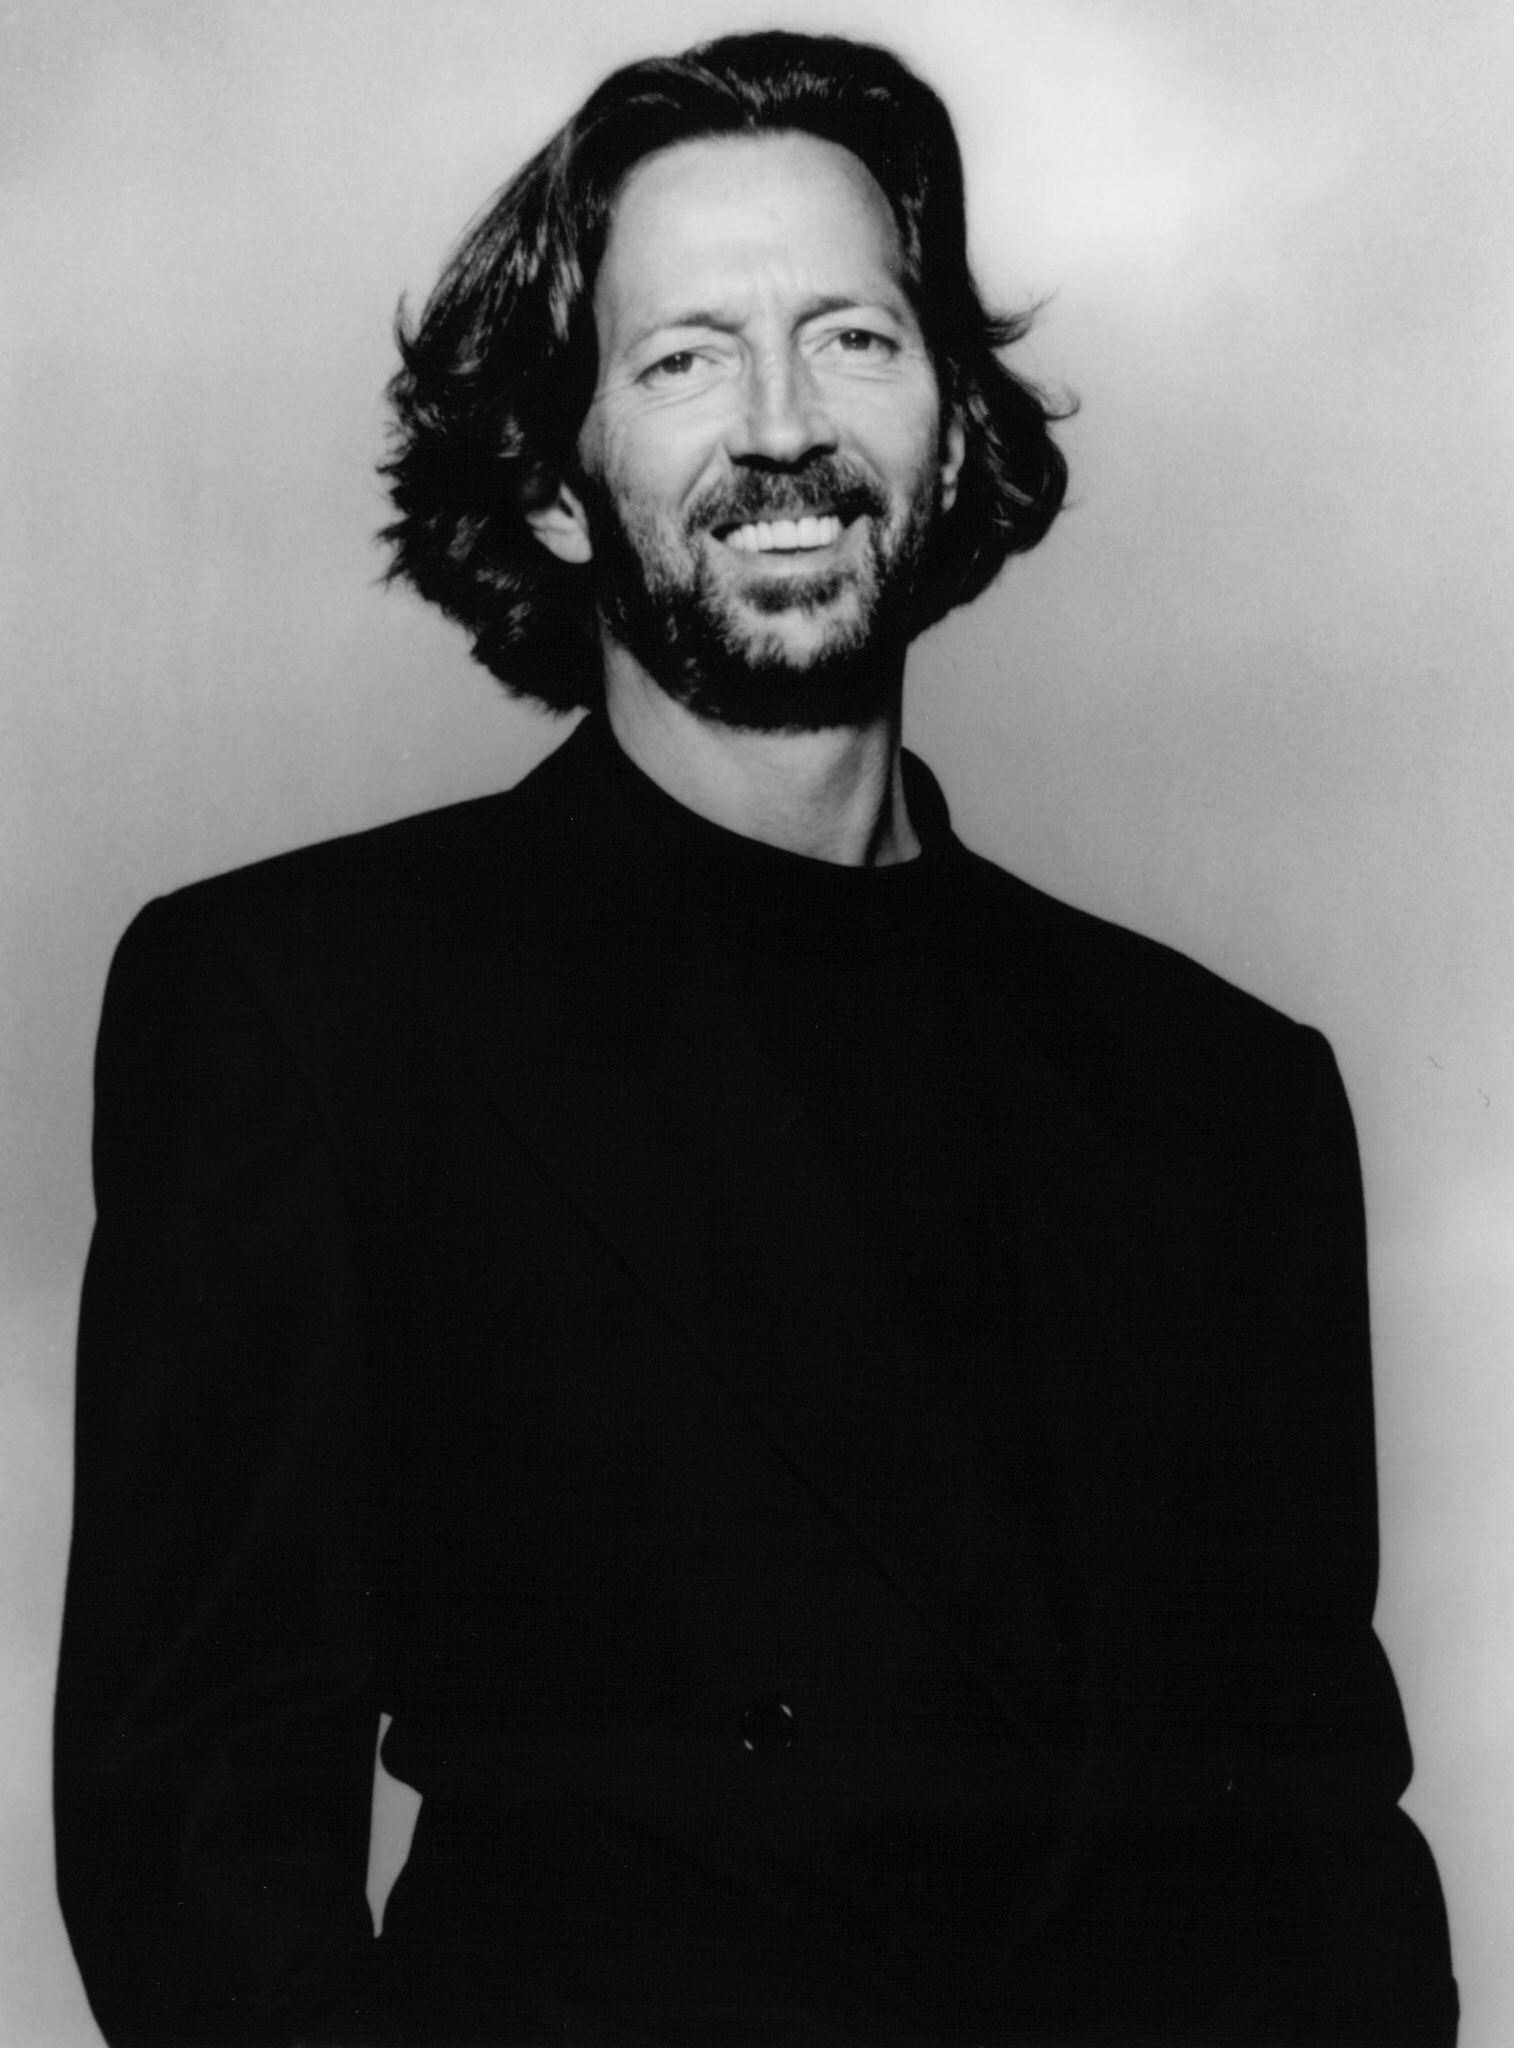 Happy birthday Eric Clapton 77 today 